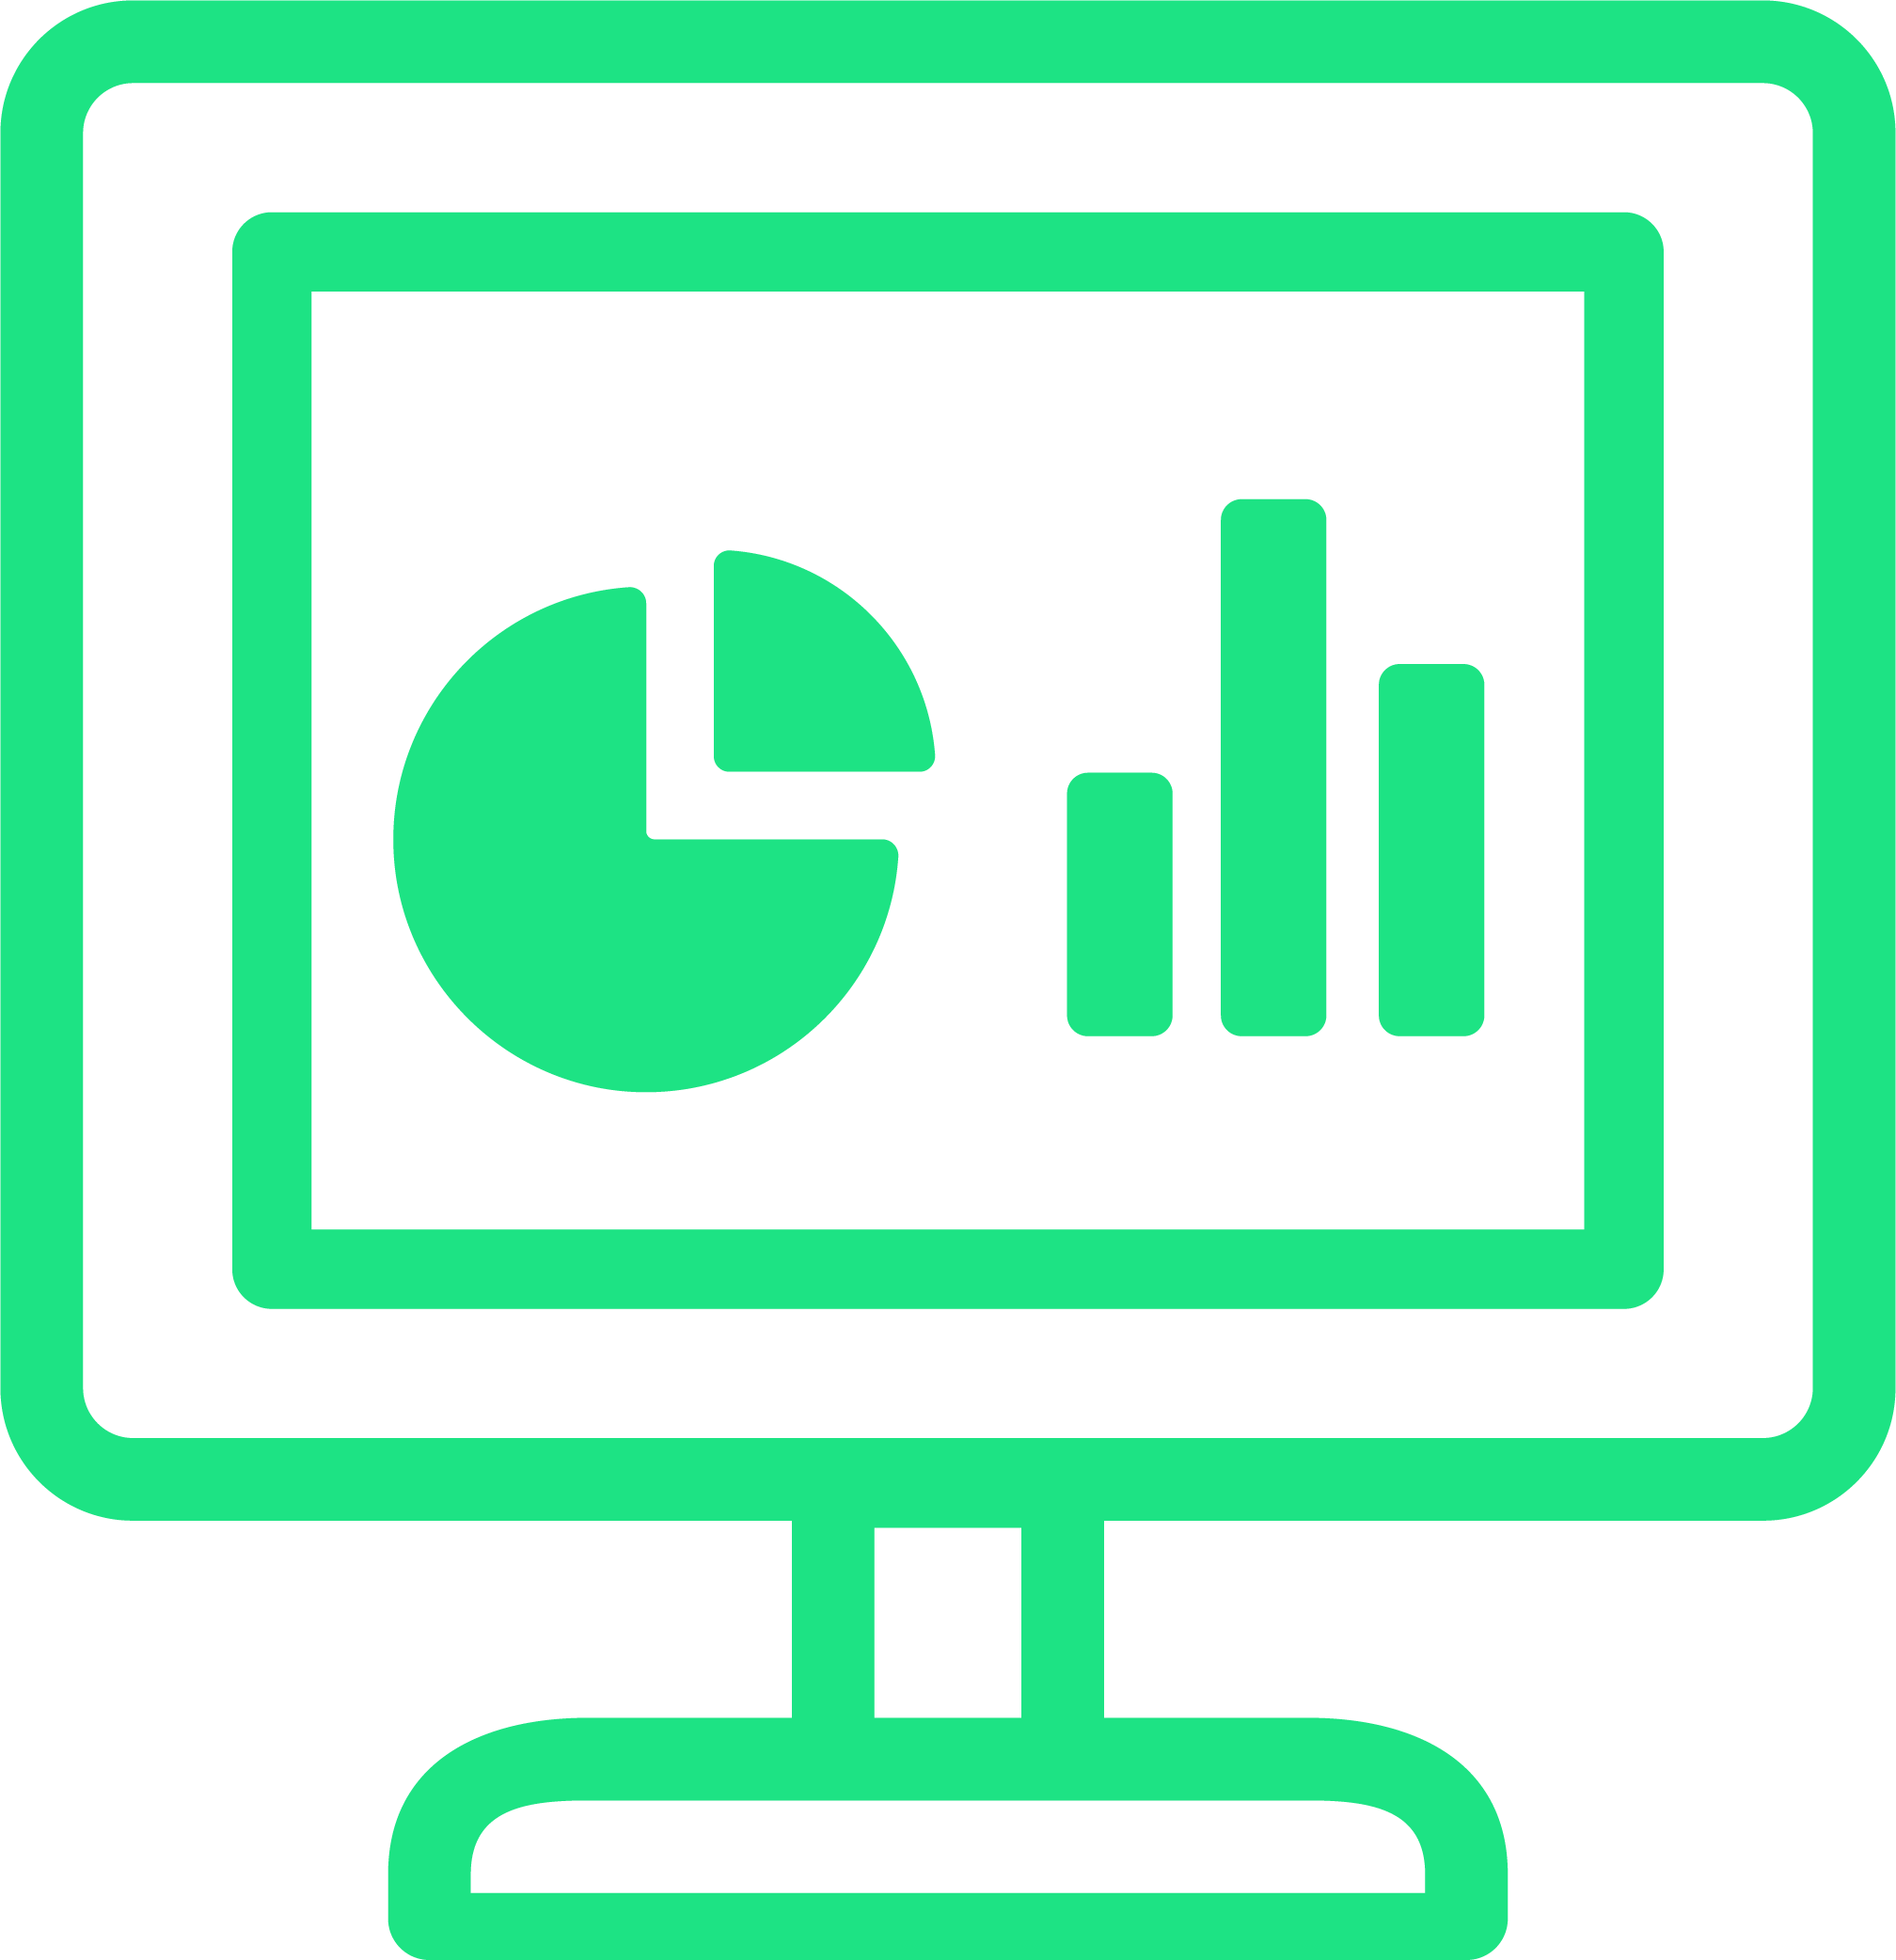 Green_Computer_Dashboard